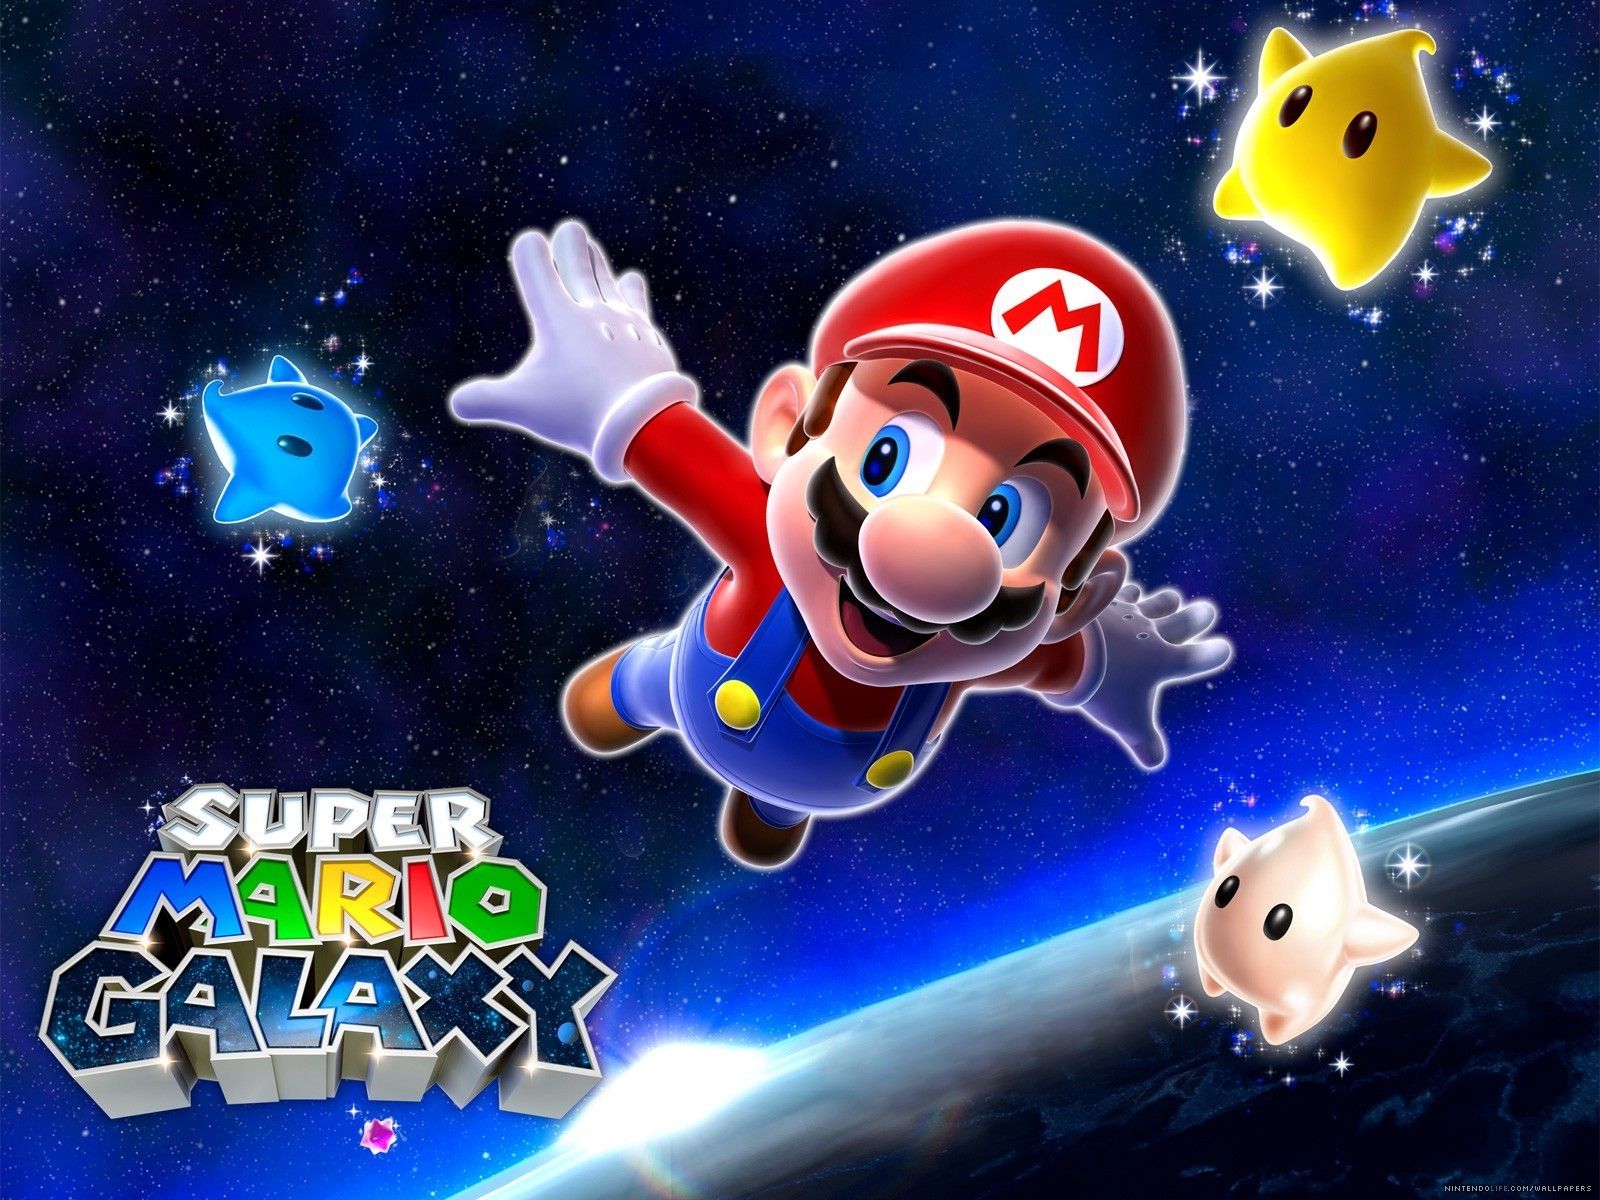 Super Mario Galaxy Wallpaper - Super Mario Bros. Wallpaper ...